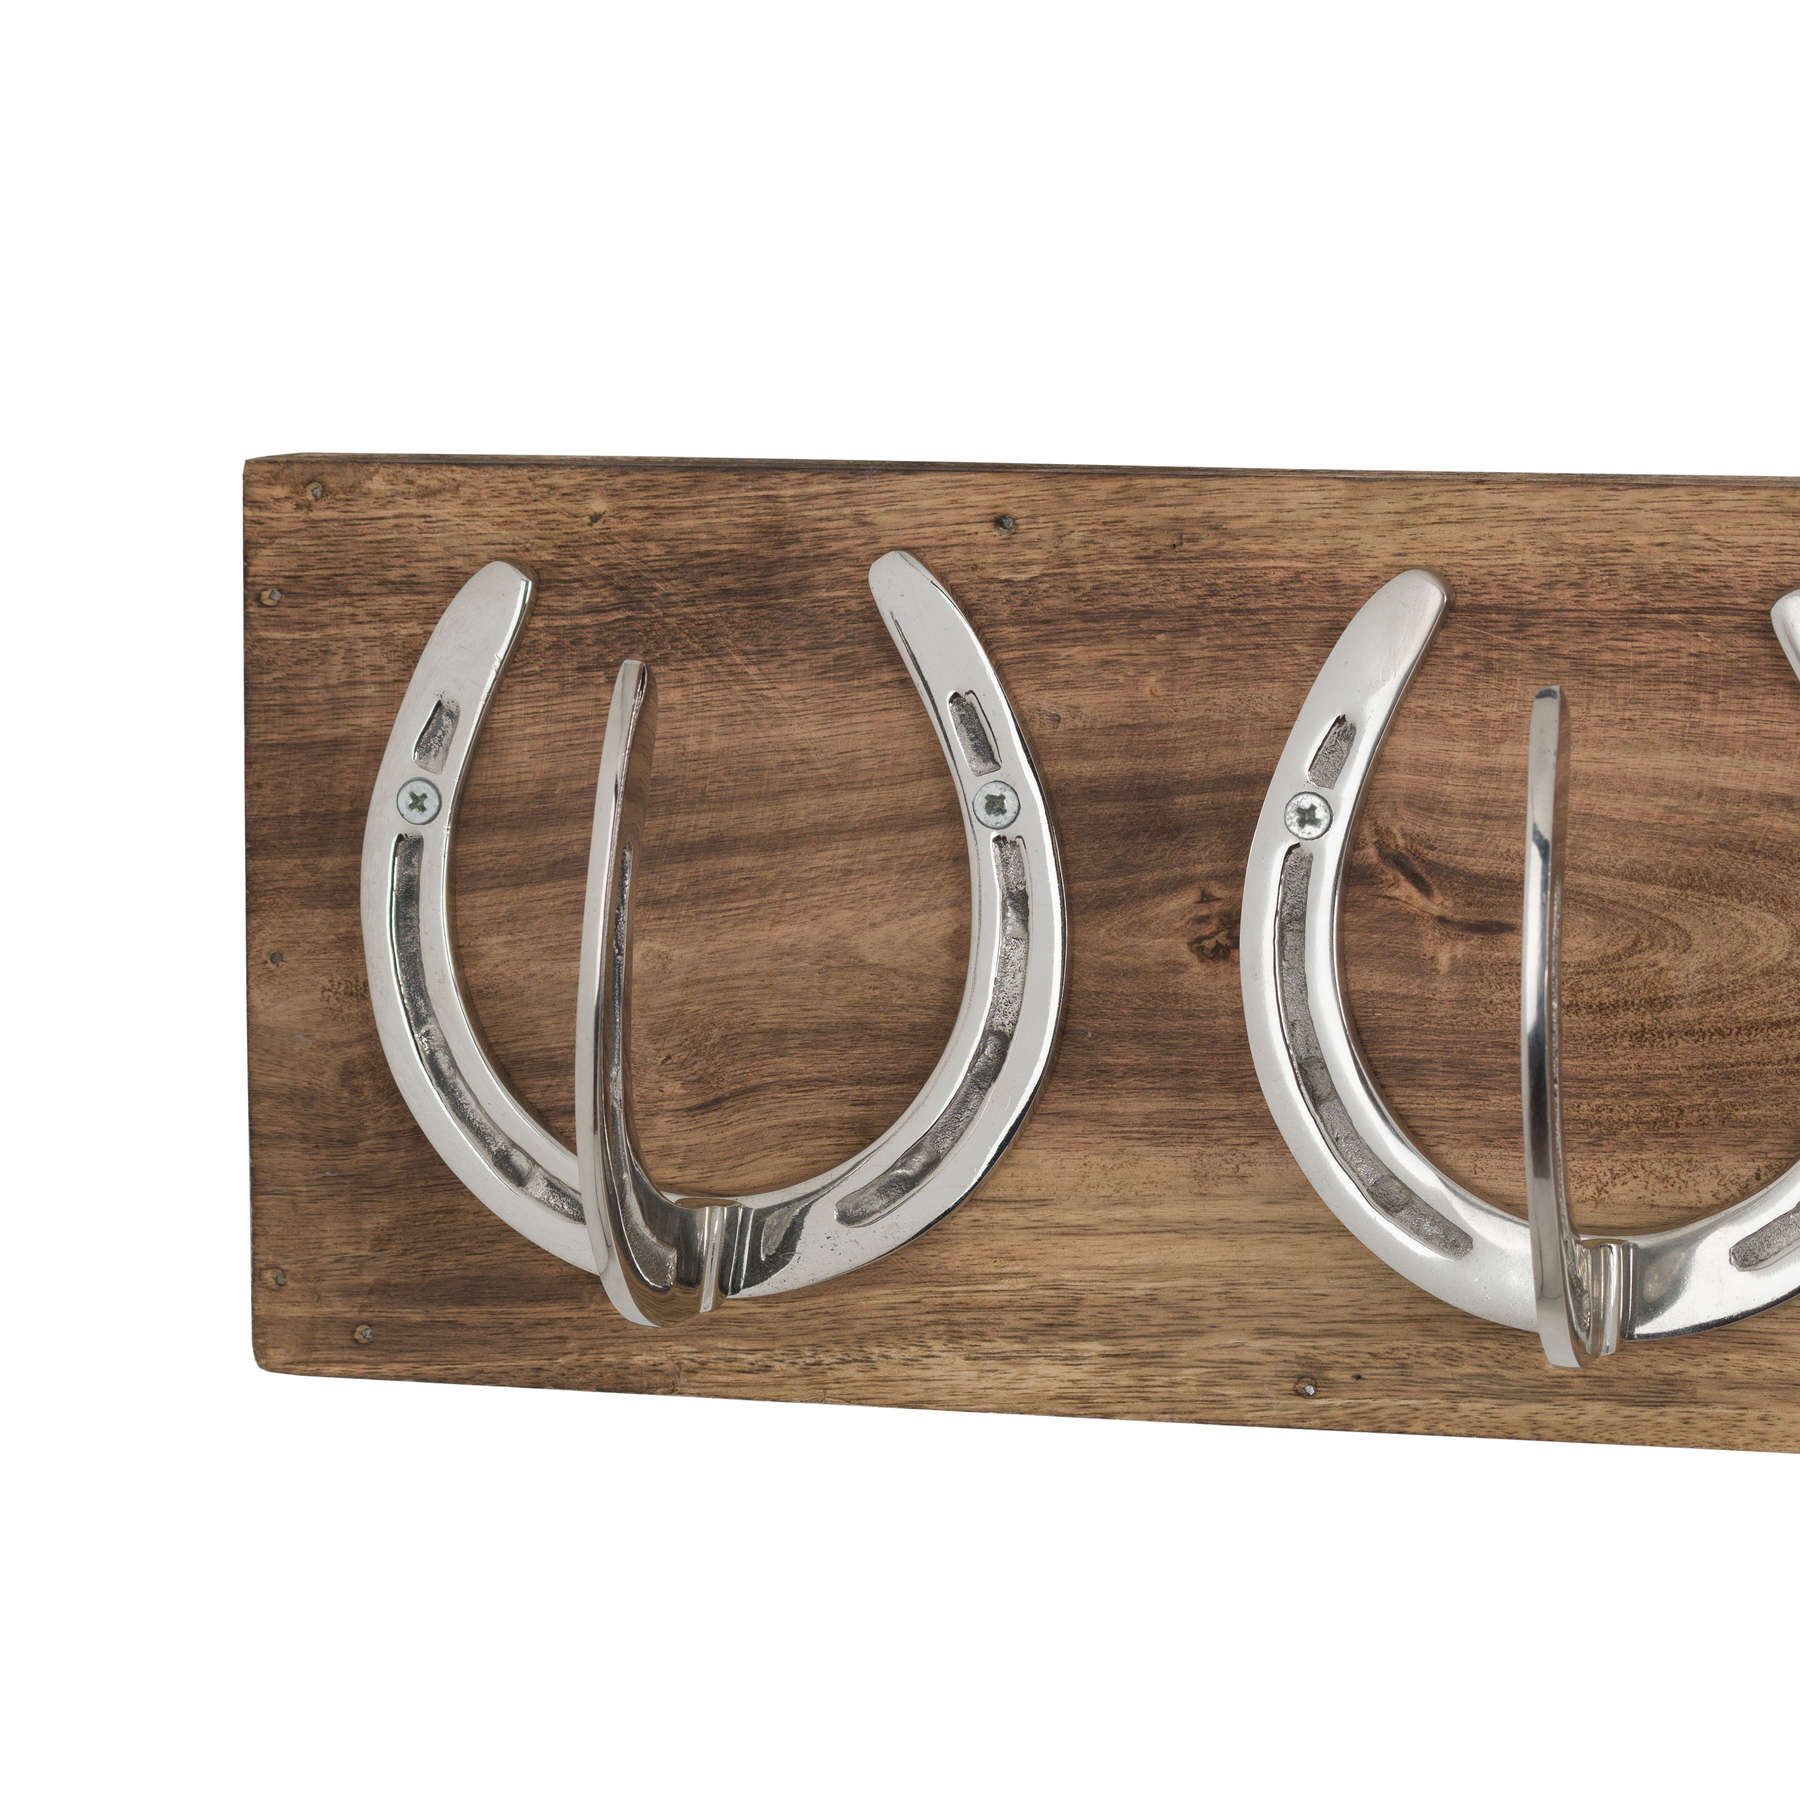 Six Nickel Horse Shoe Hooks On Wooden Board - Image 2